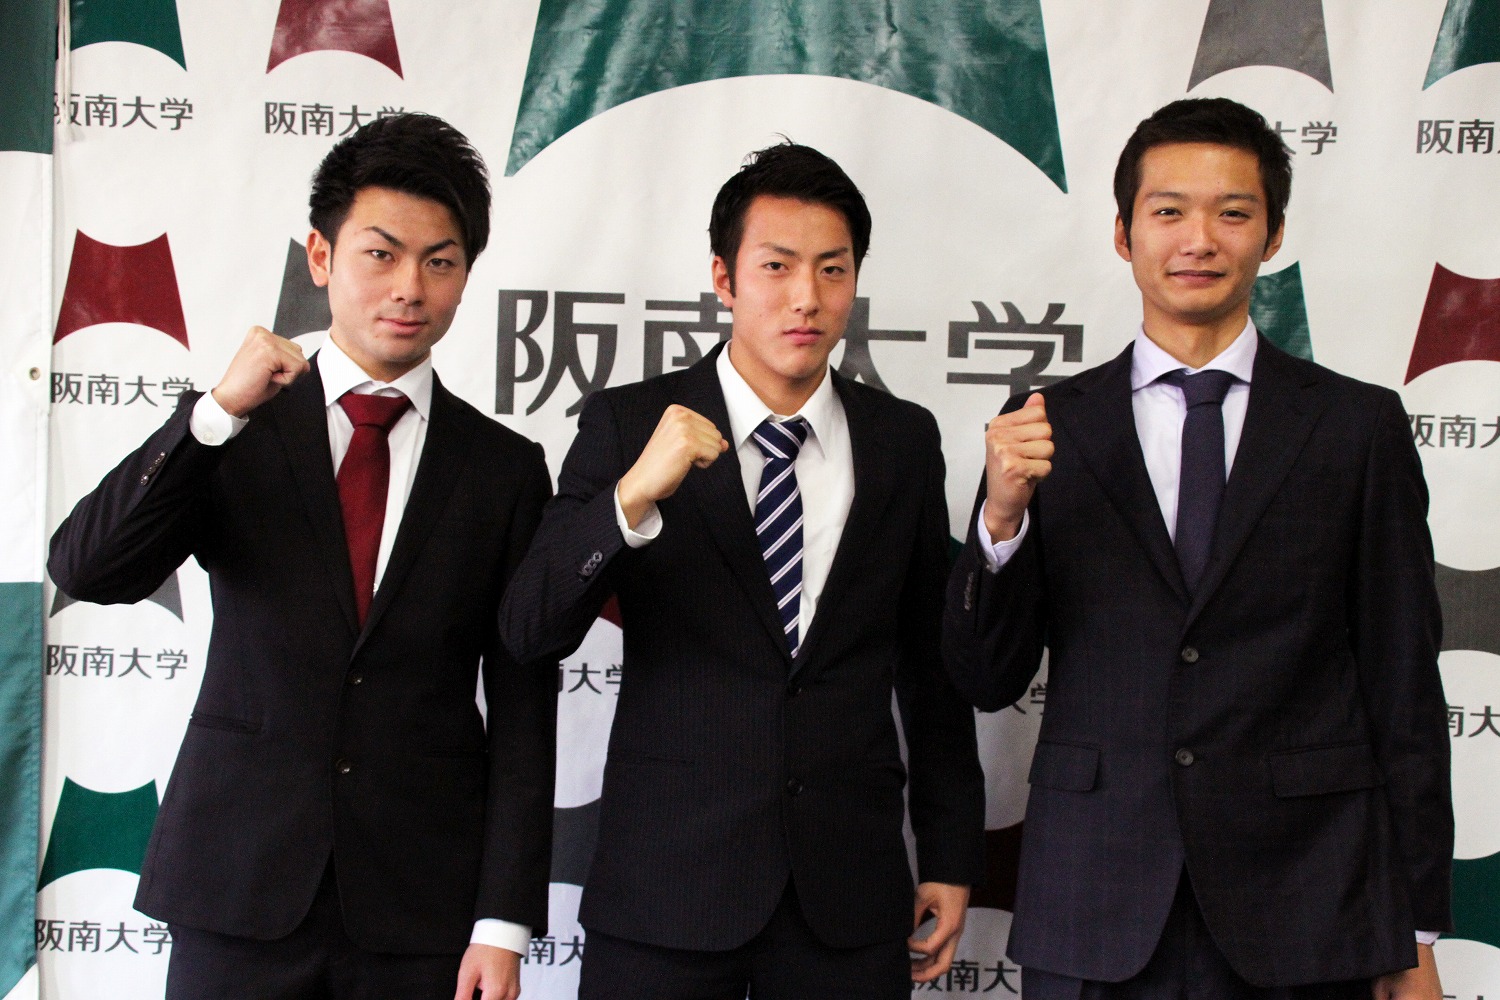 阪南大学サッカー部5名がJリーグチーム3クラブに新加入